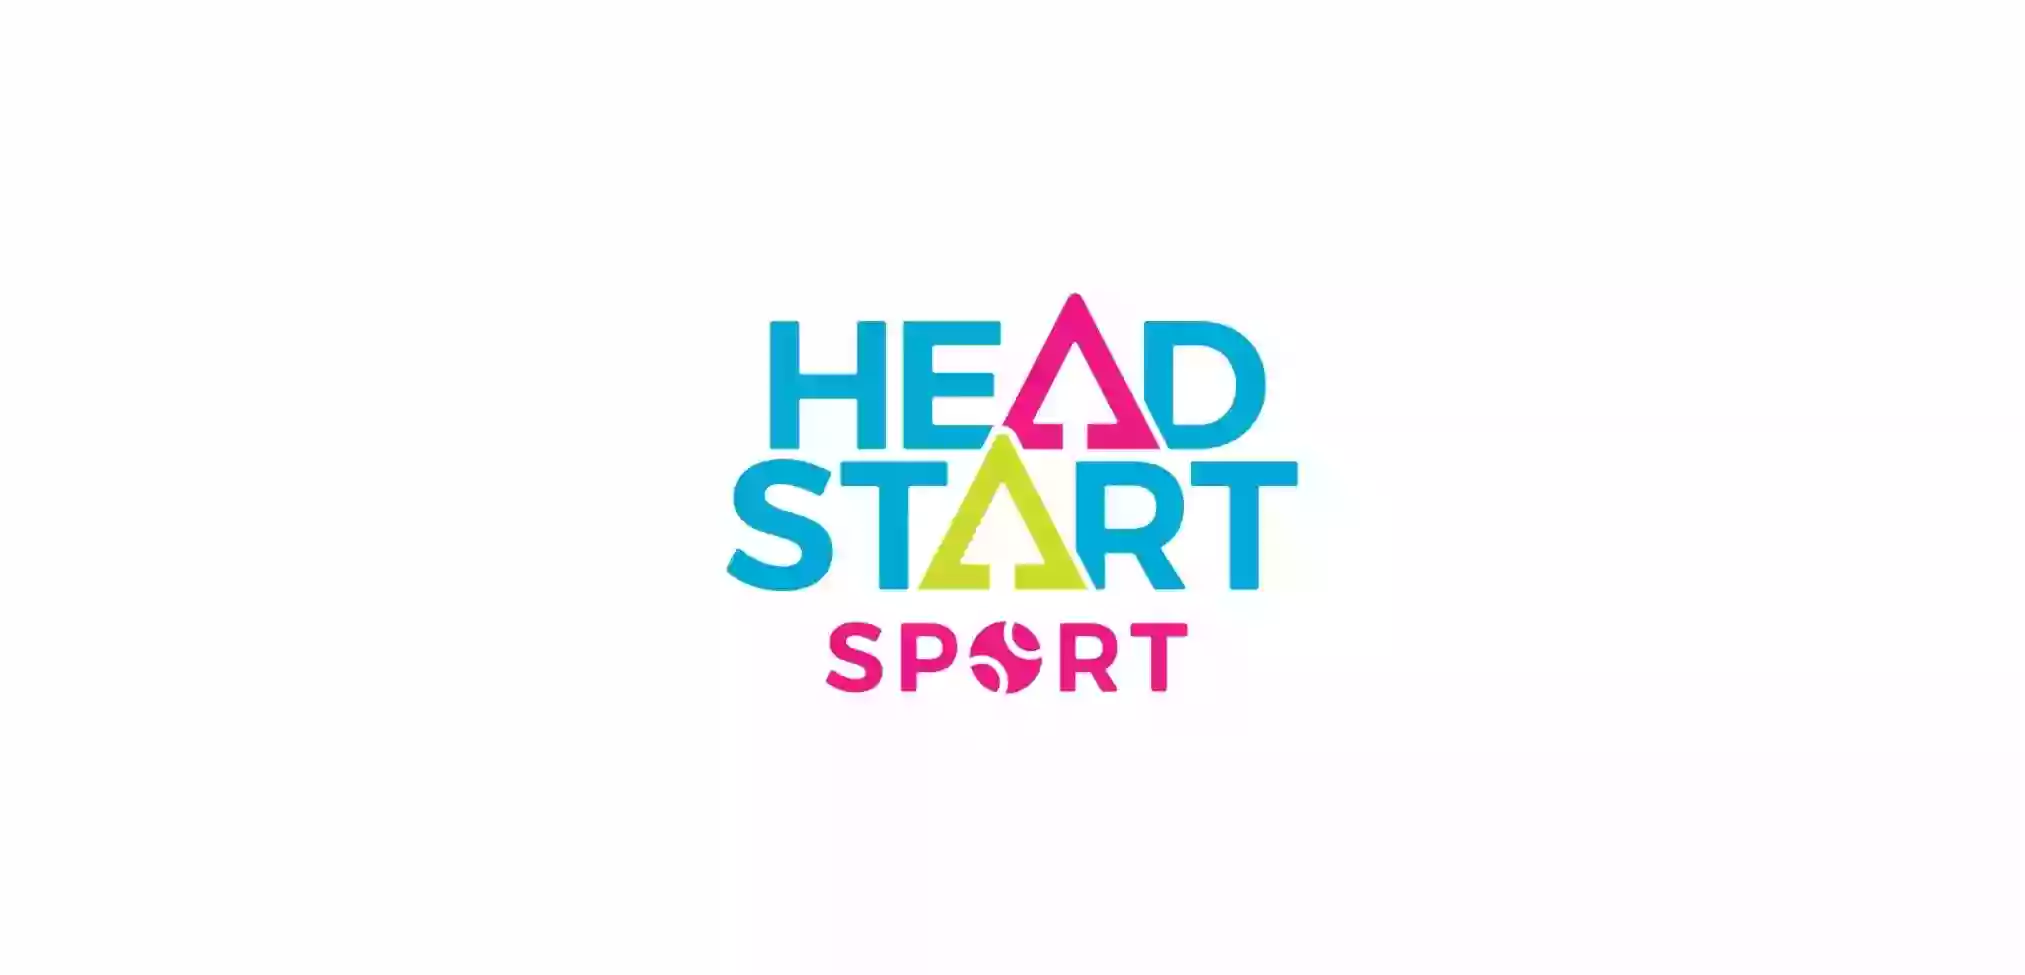 Head Start Sport - Lockleys